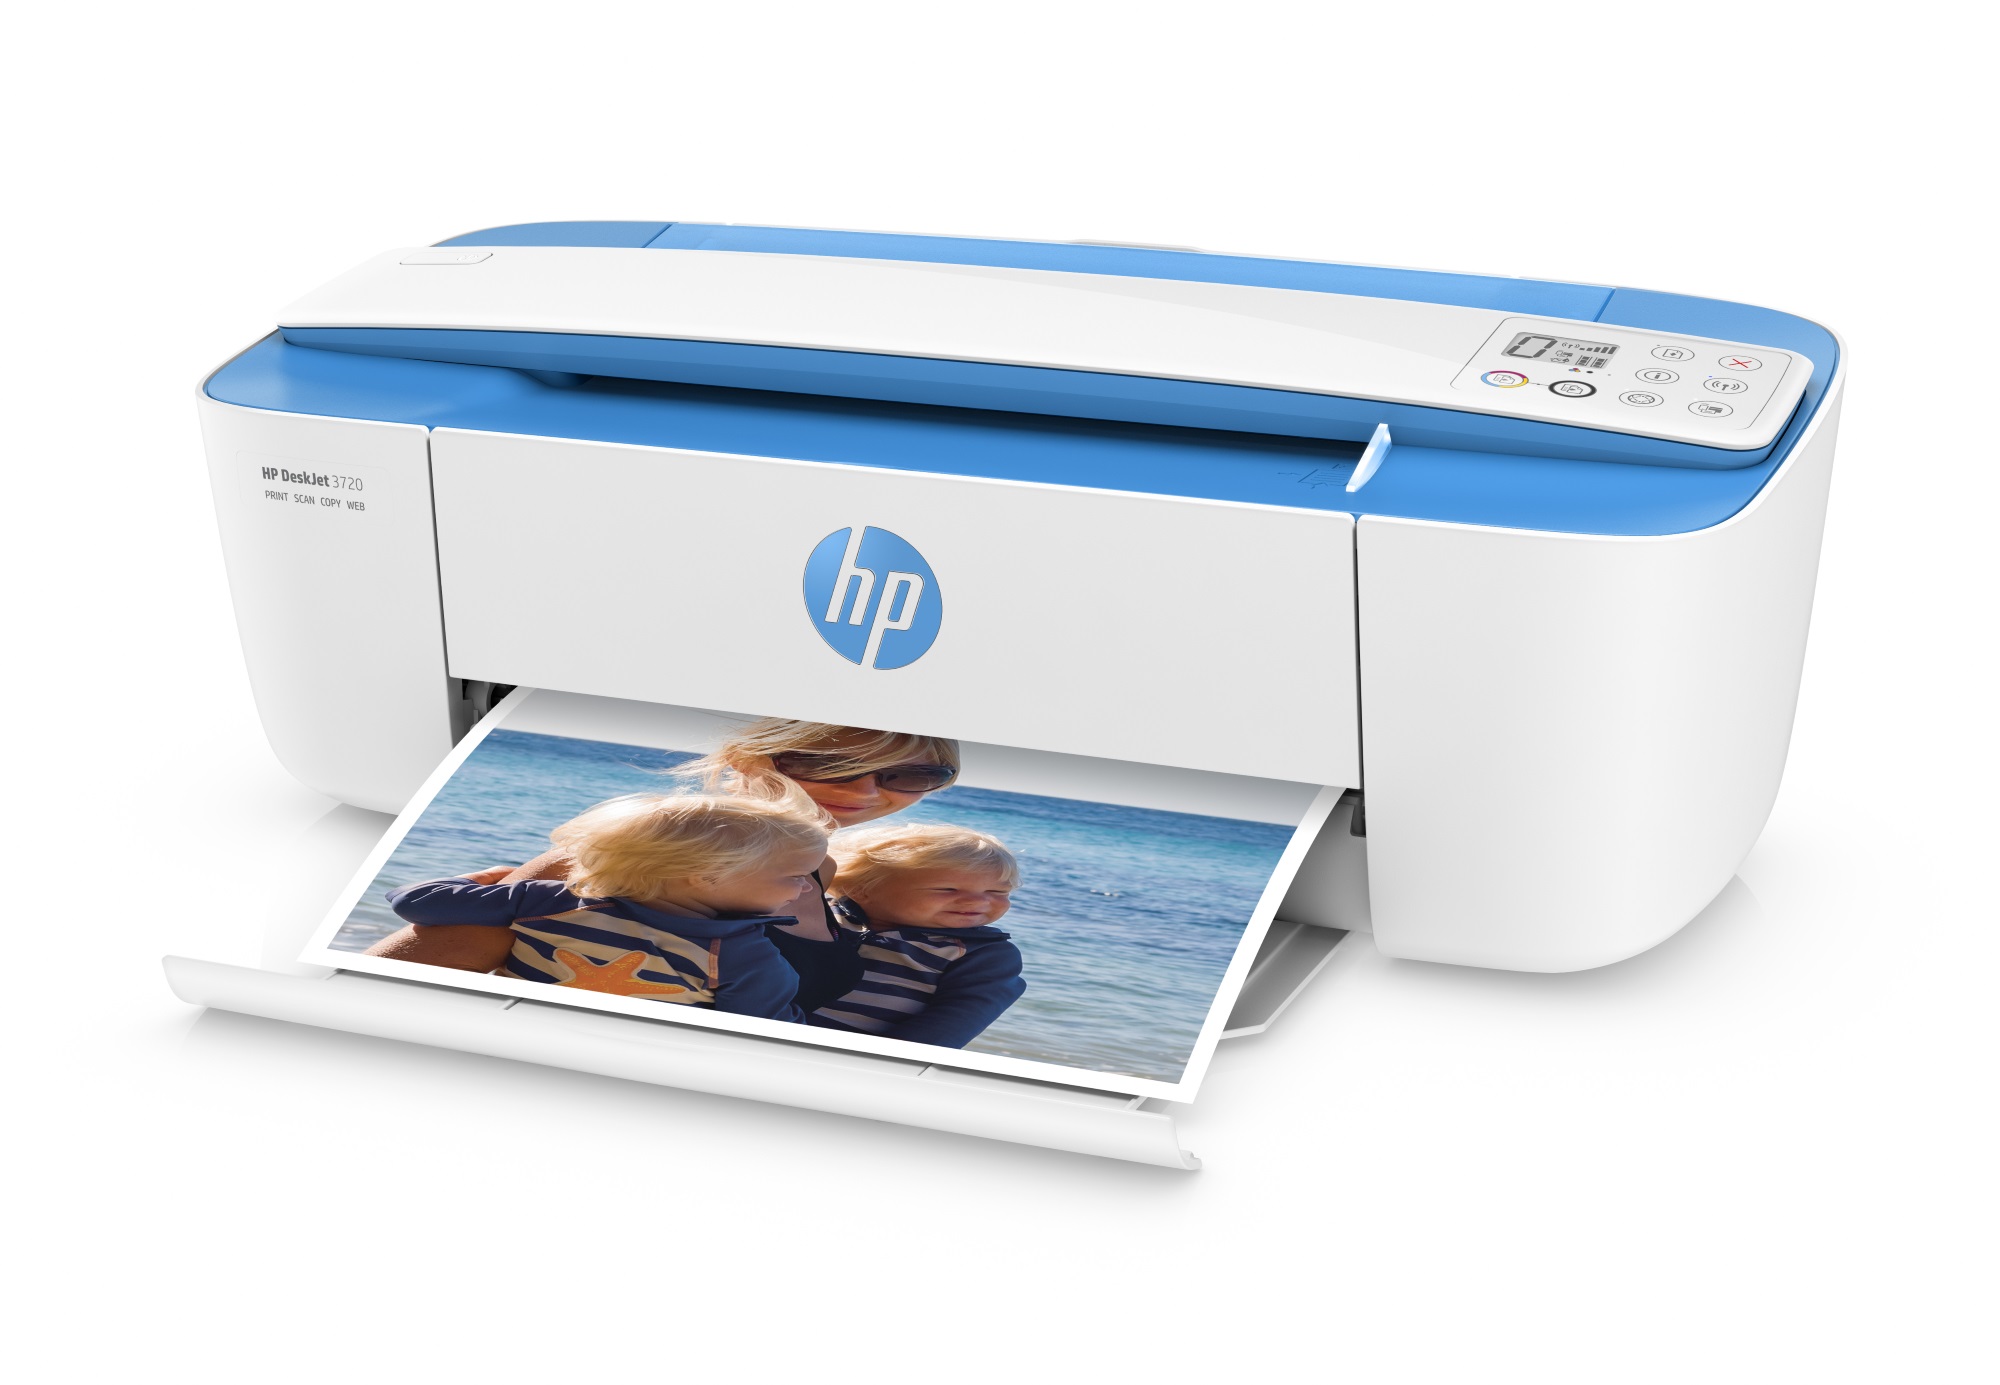 Une imprimante connectée au Web chez HP